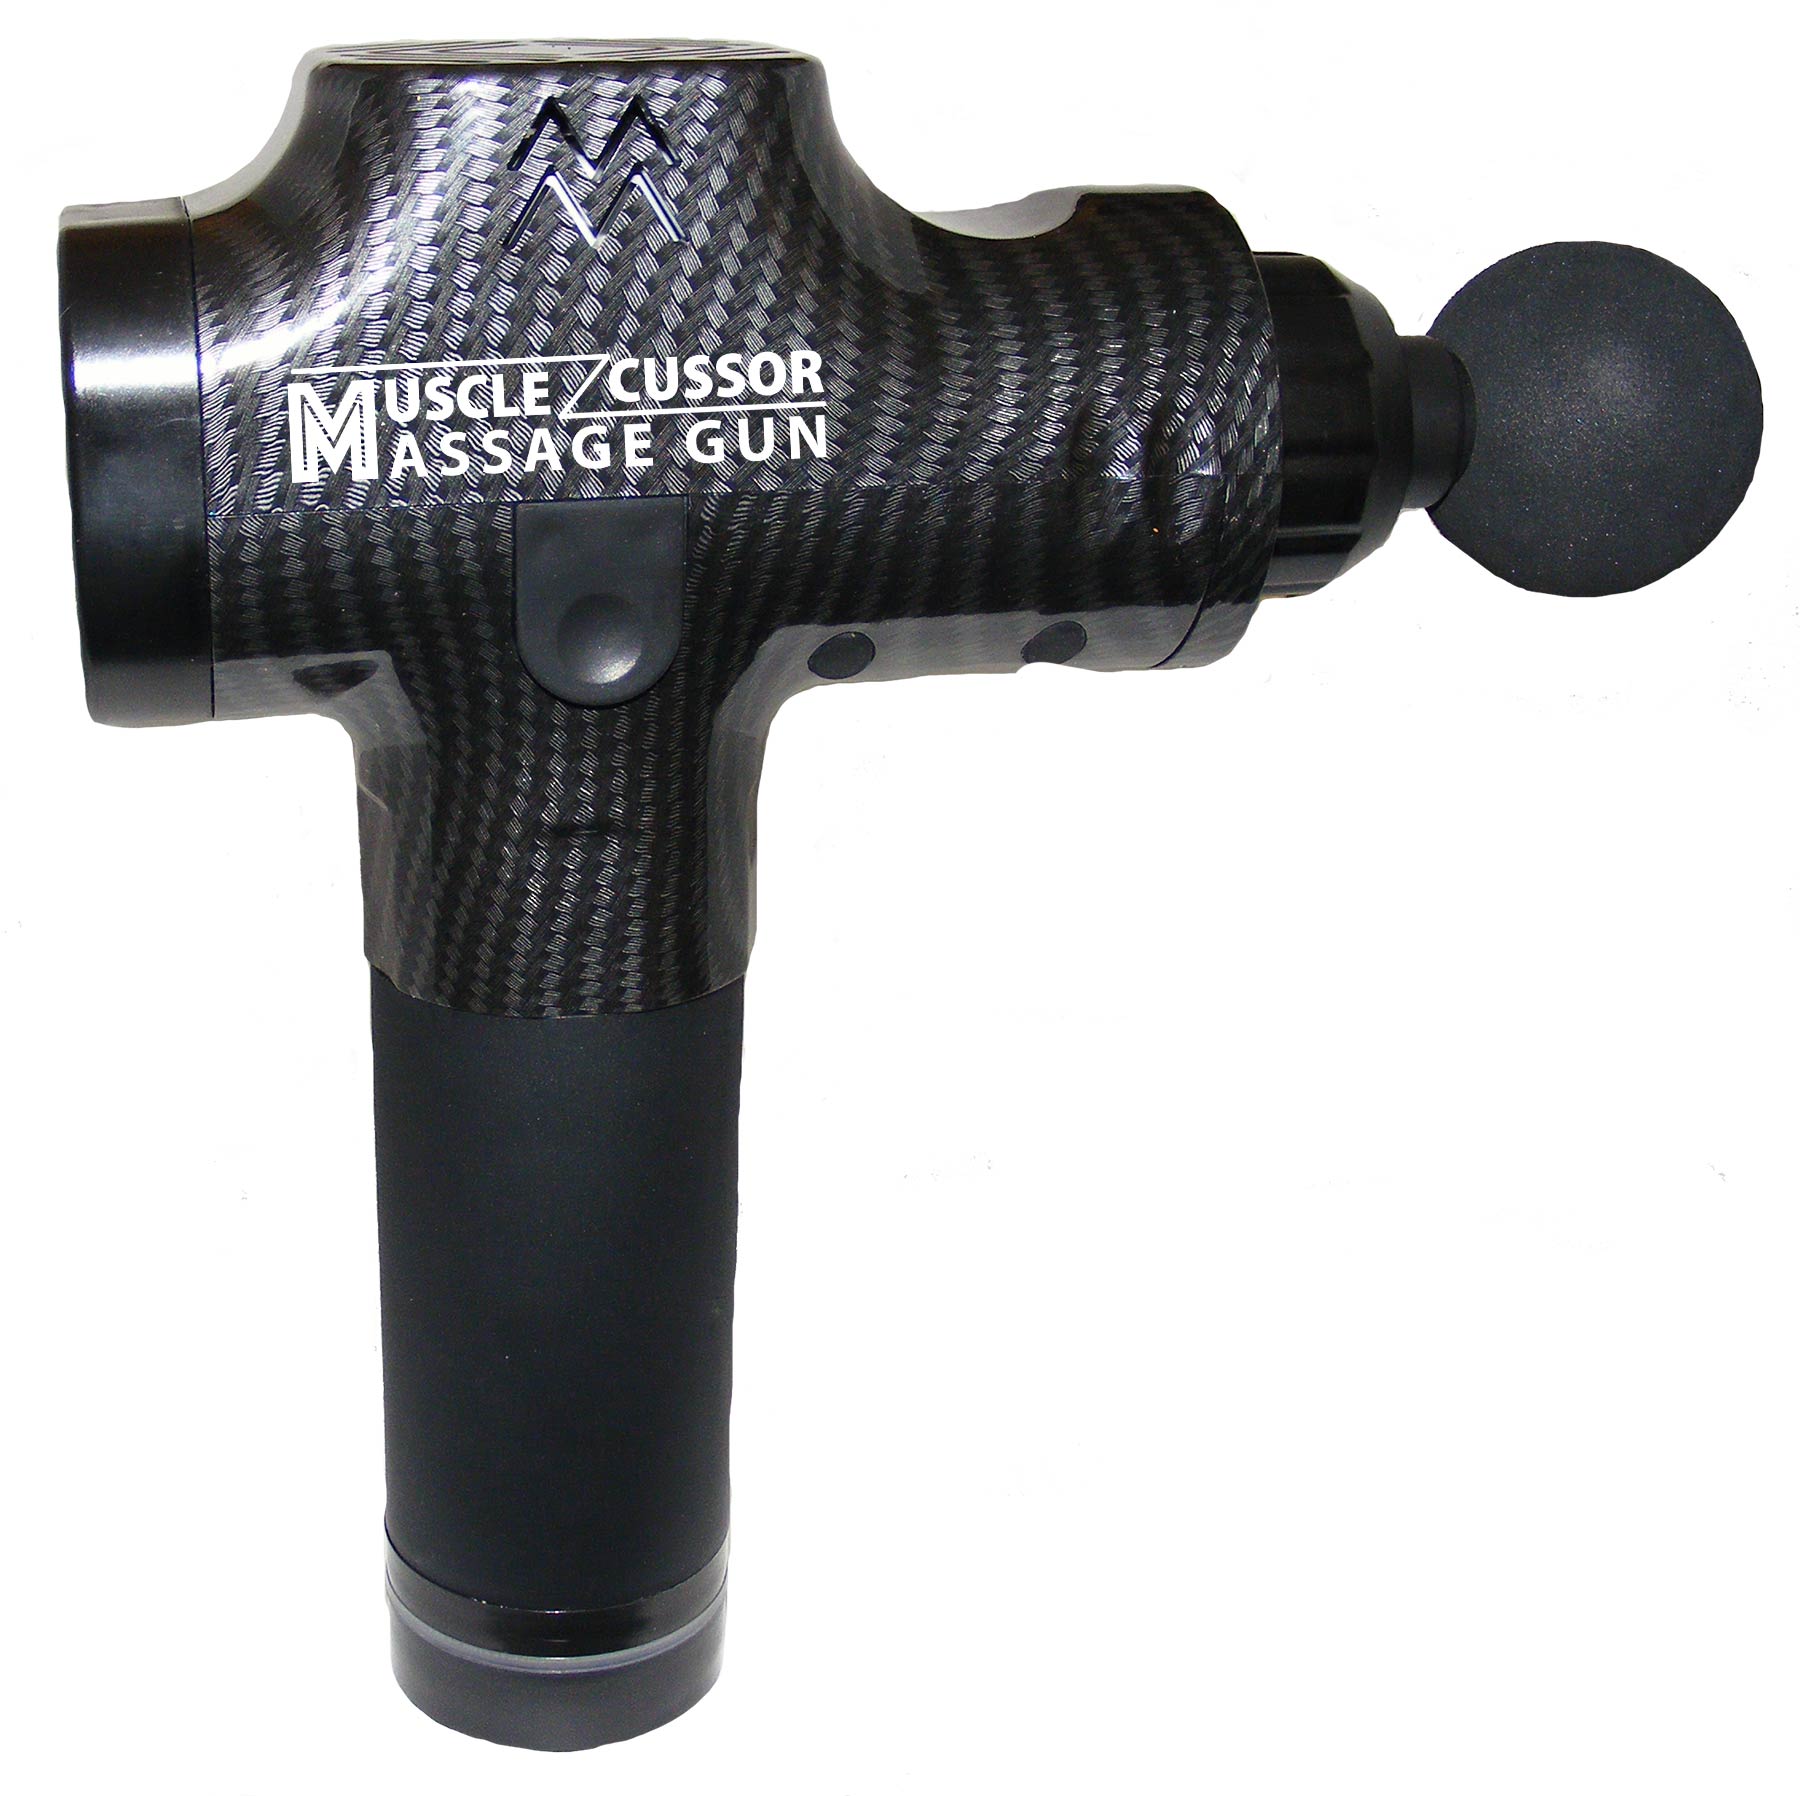 An image of a Muscle cussor massage gun.